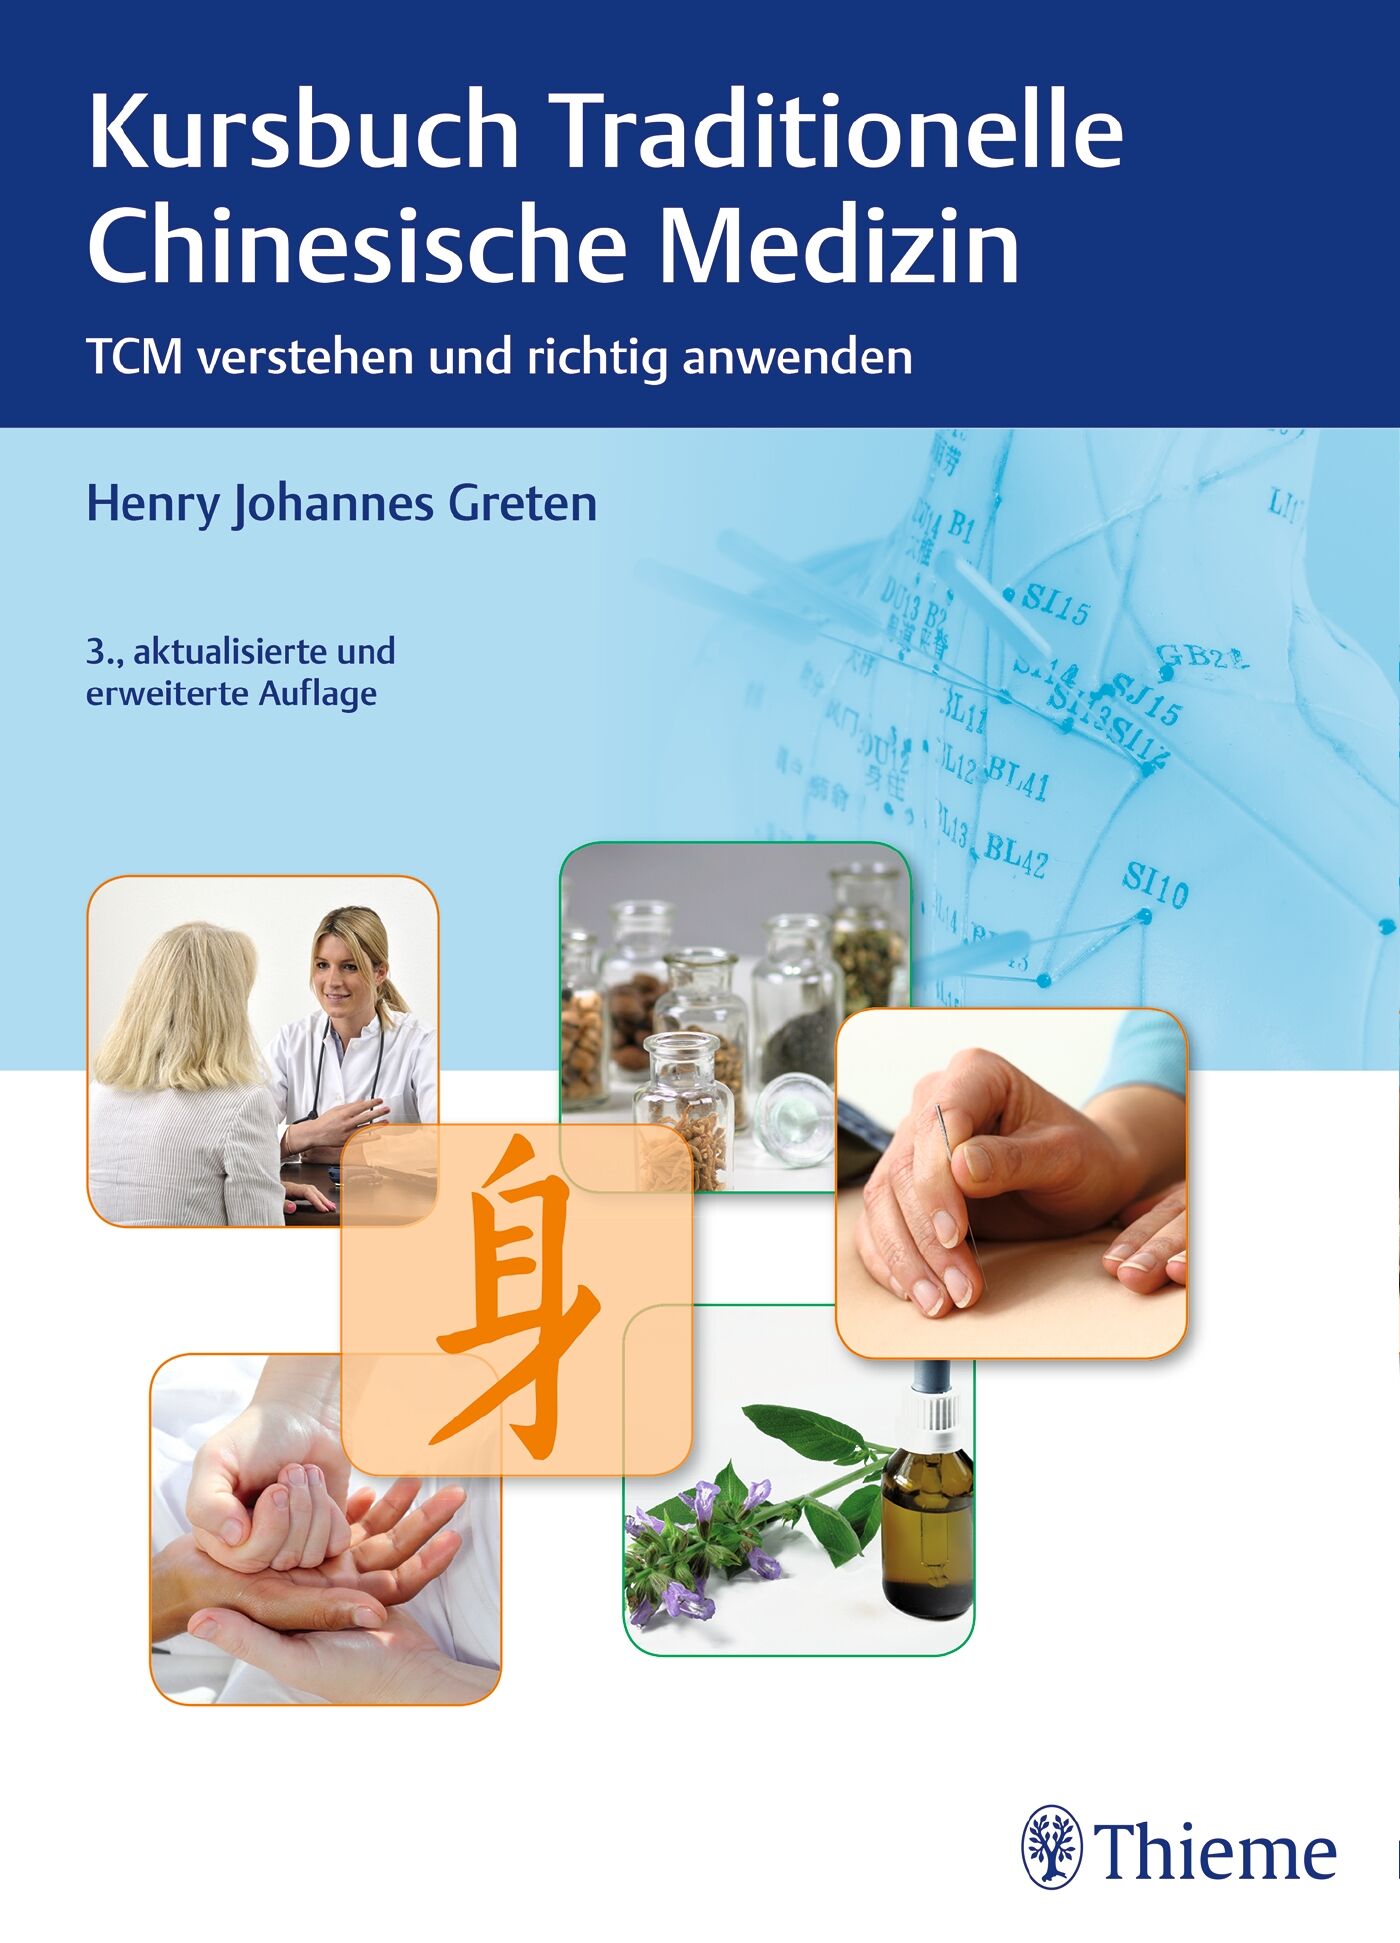 Kursbuch Traditionelle Chinesische Medizin, 9783131216632